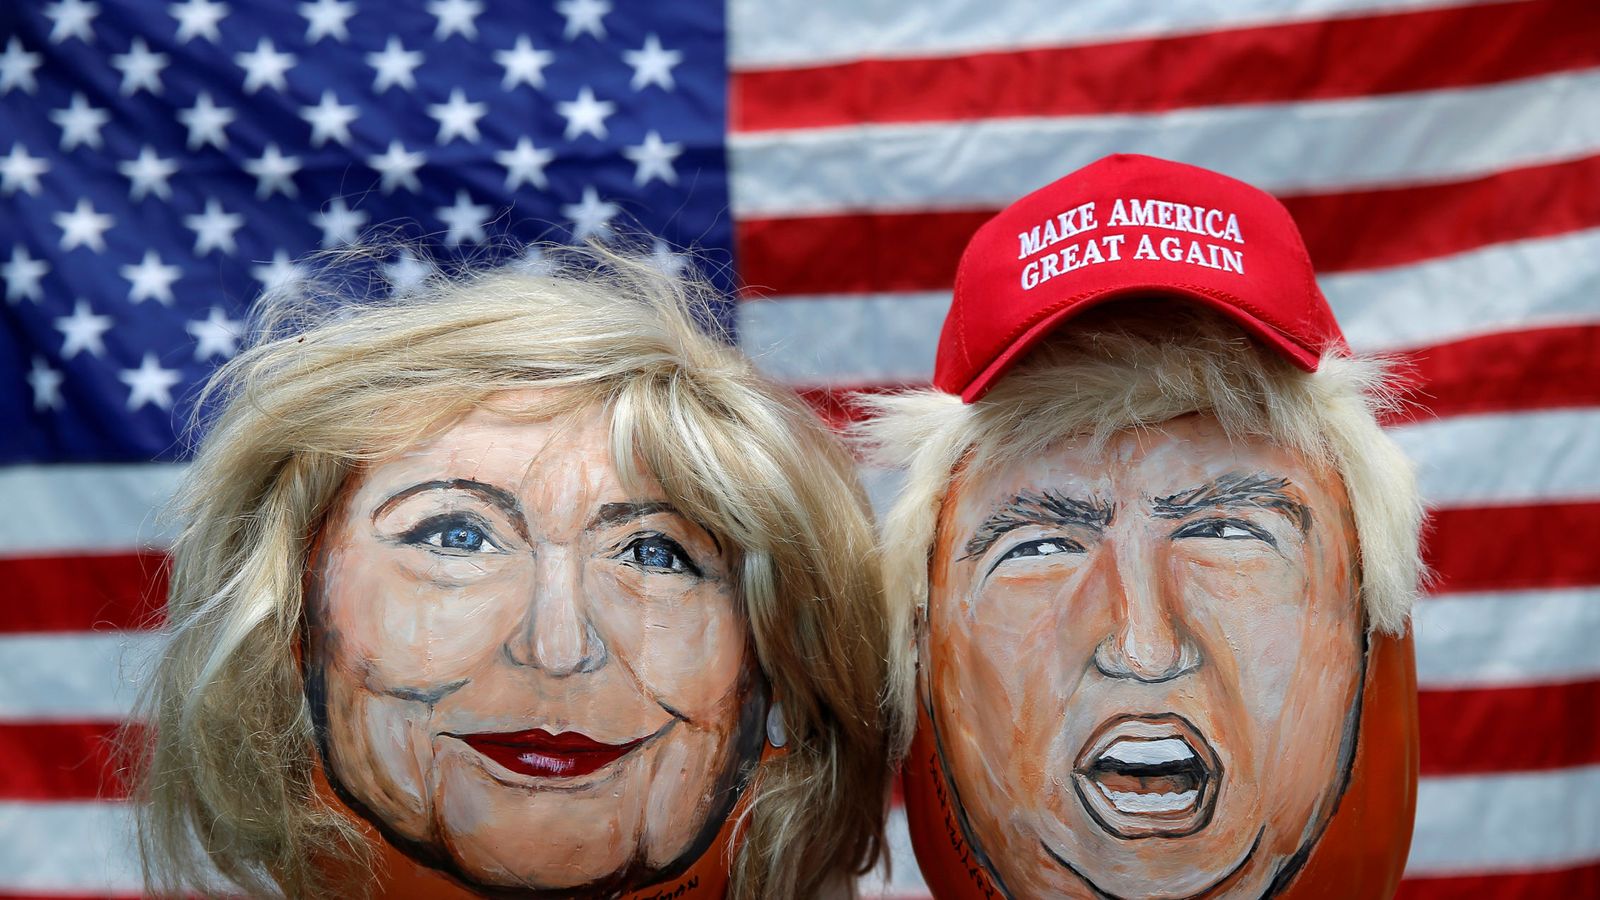 Foto: Los rostros de Hillary Clinton y Donald Trump pintados en calabazas decorativas por un artista de Illinois, junio de 2016 (Reuters)